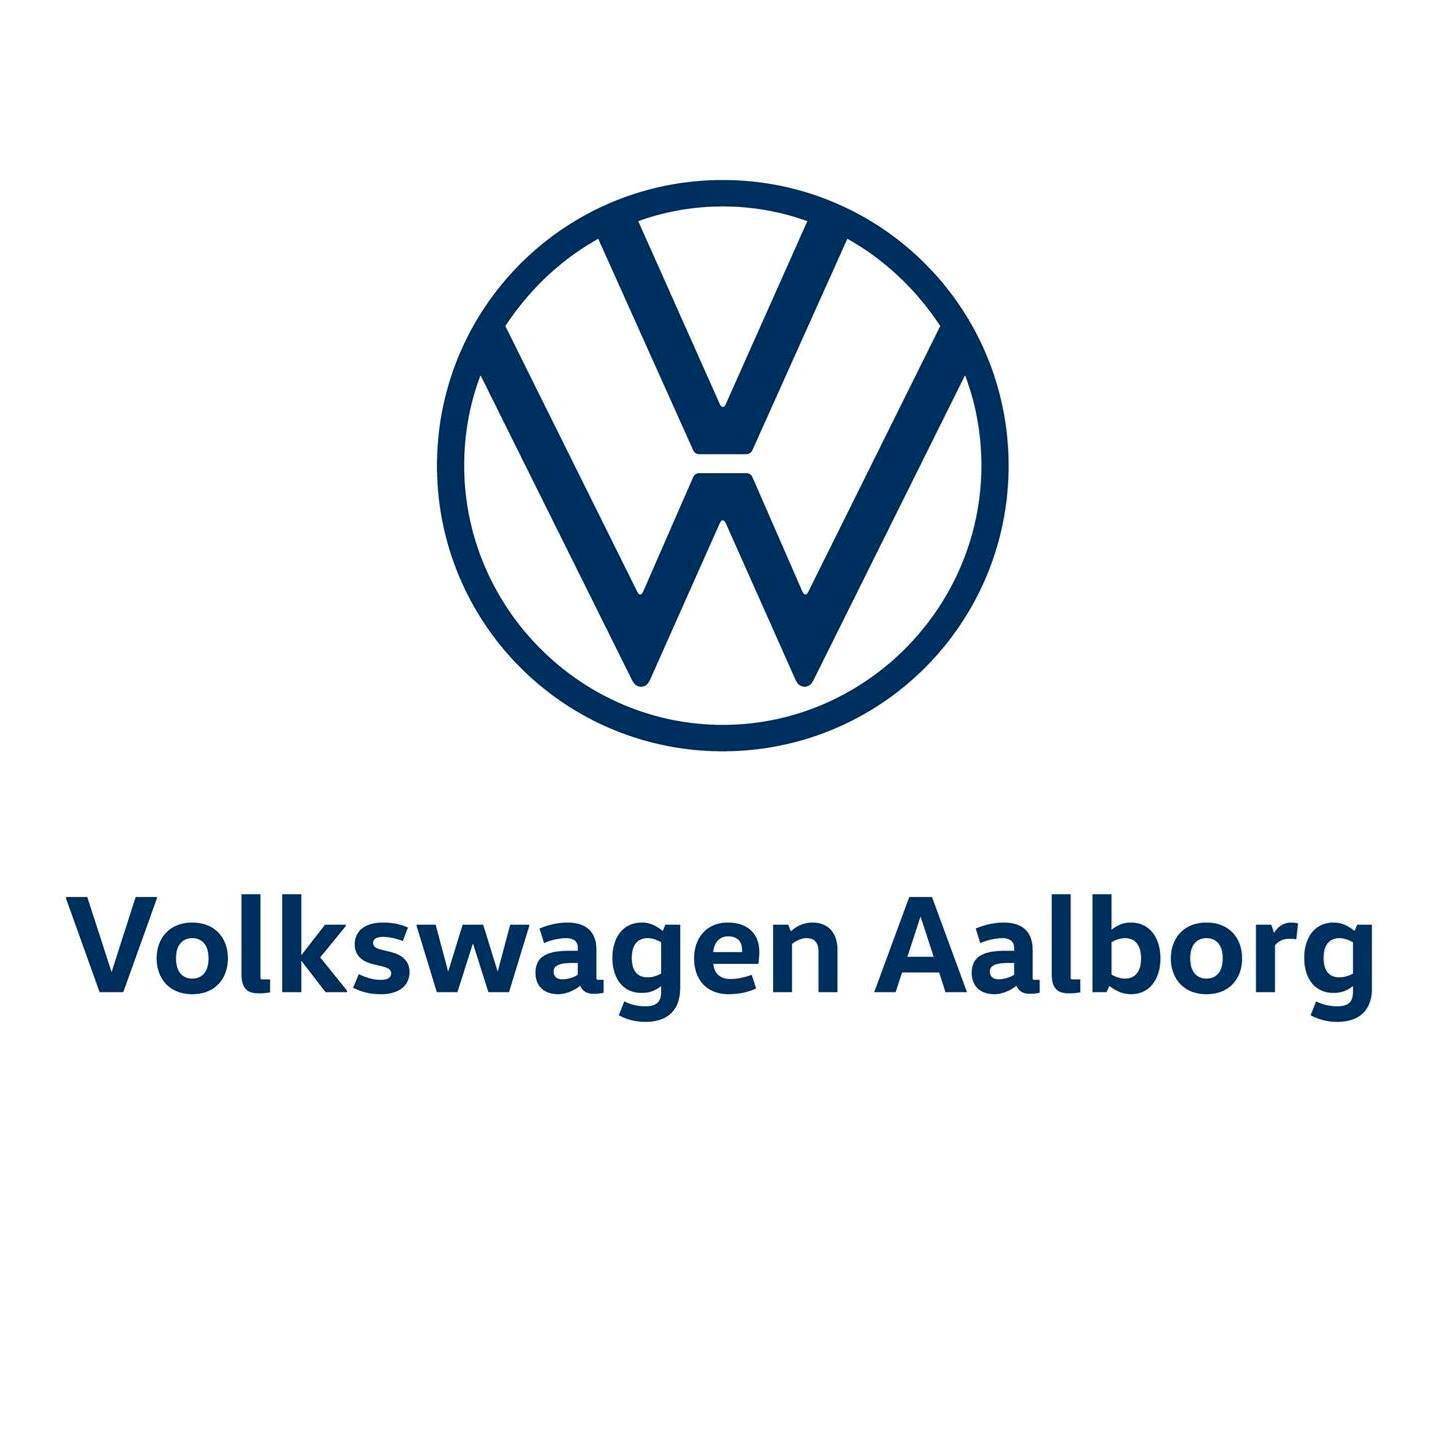 Volkswagen Aalborg